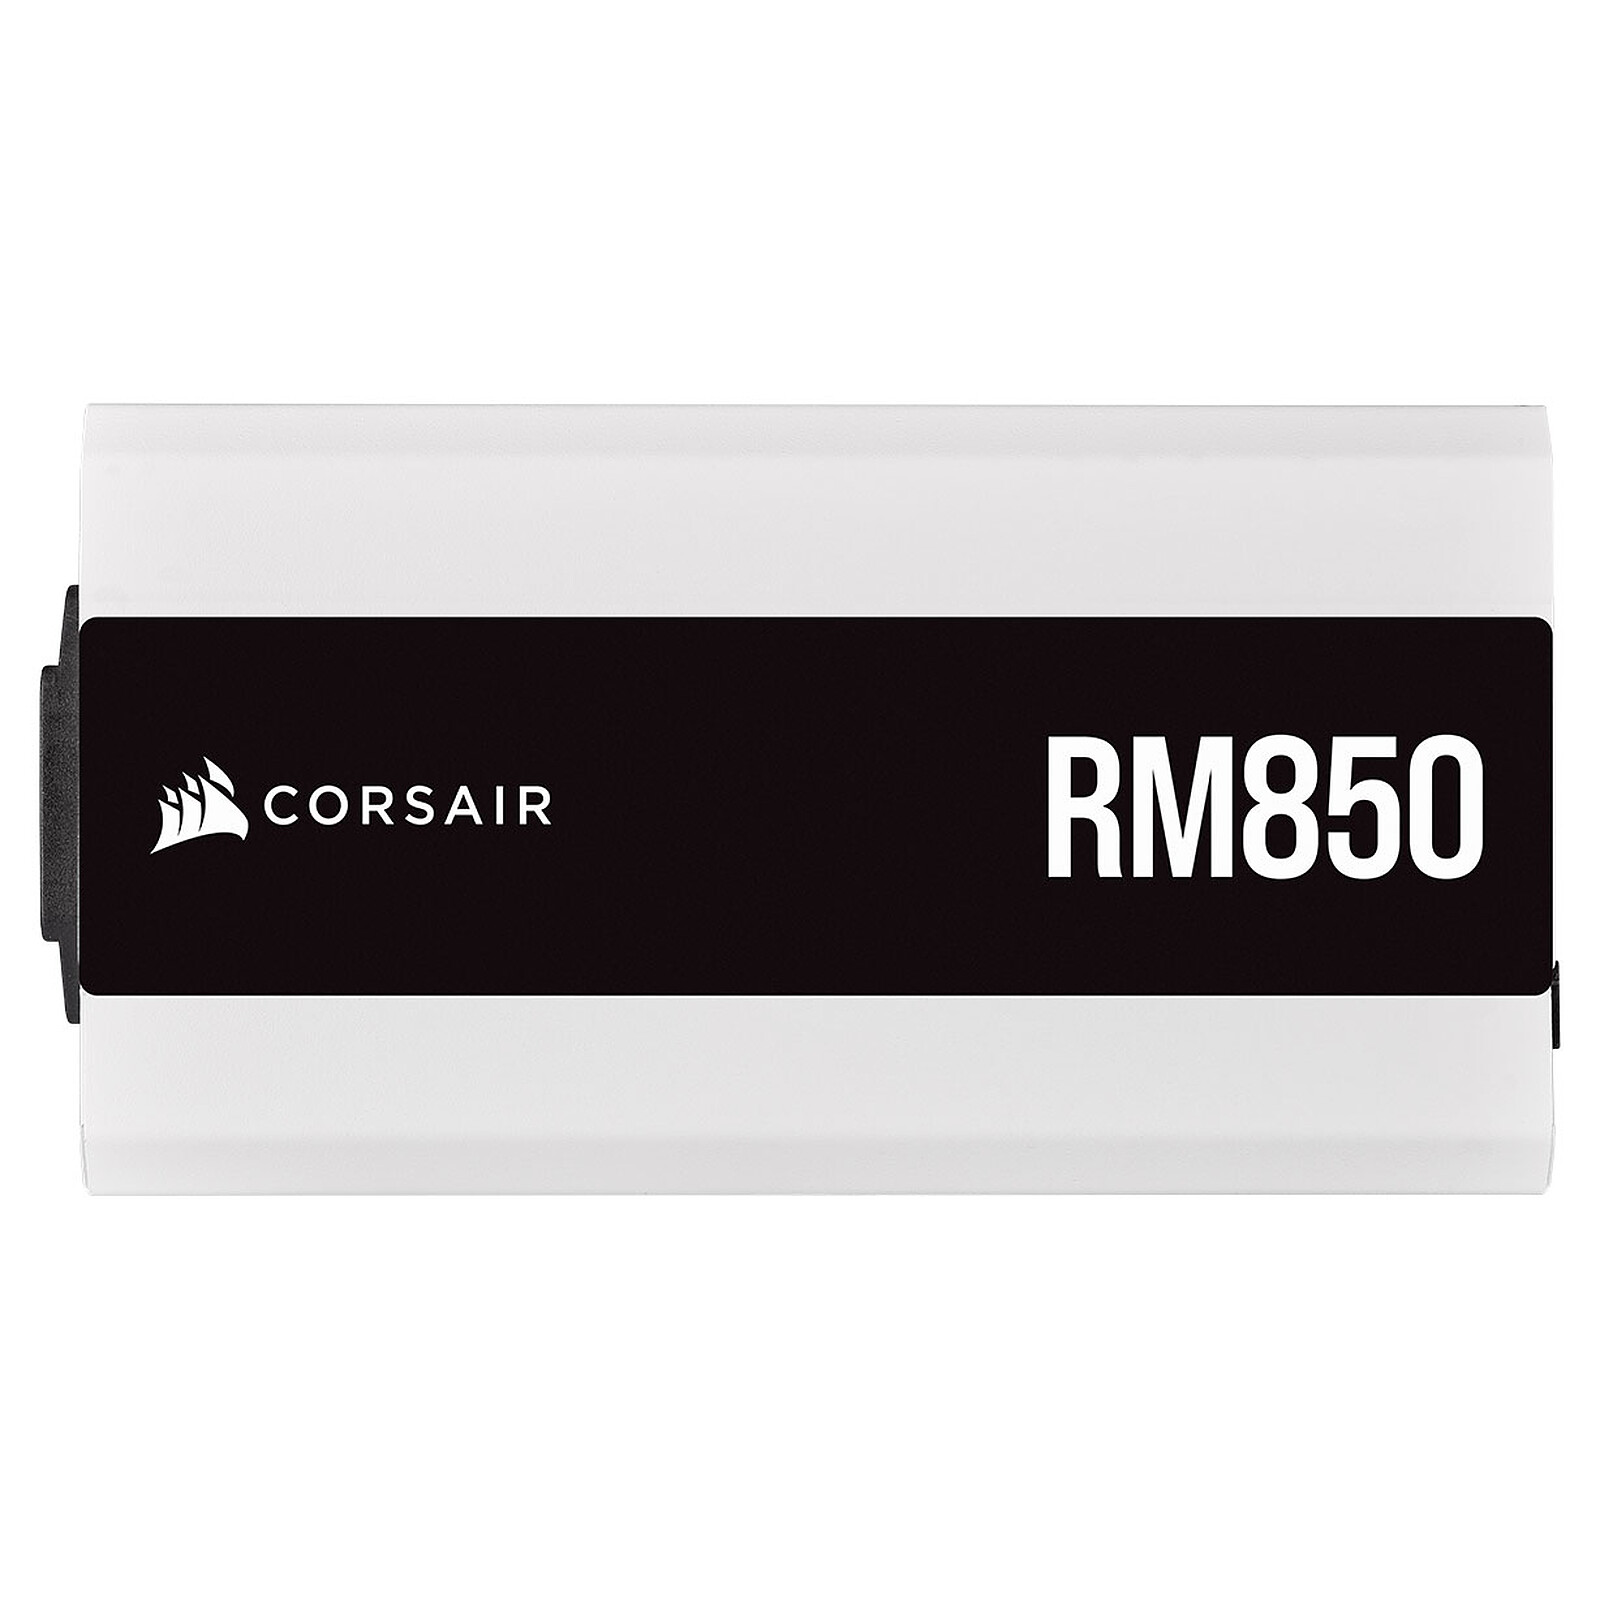  Corsair RM850, Serie RM, certificado 80 Plus Gold, fuente de  alimentación ATX totalmente modular de 850 W - Negro : Electrónica